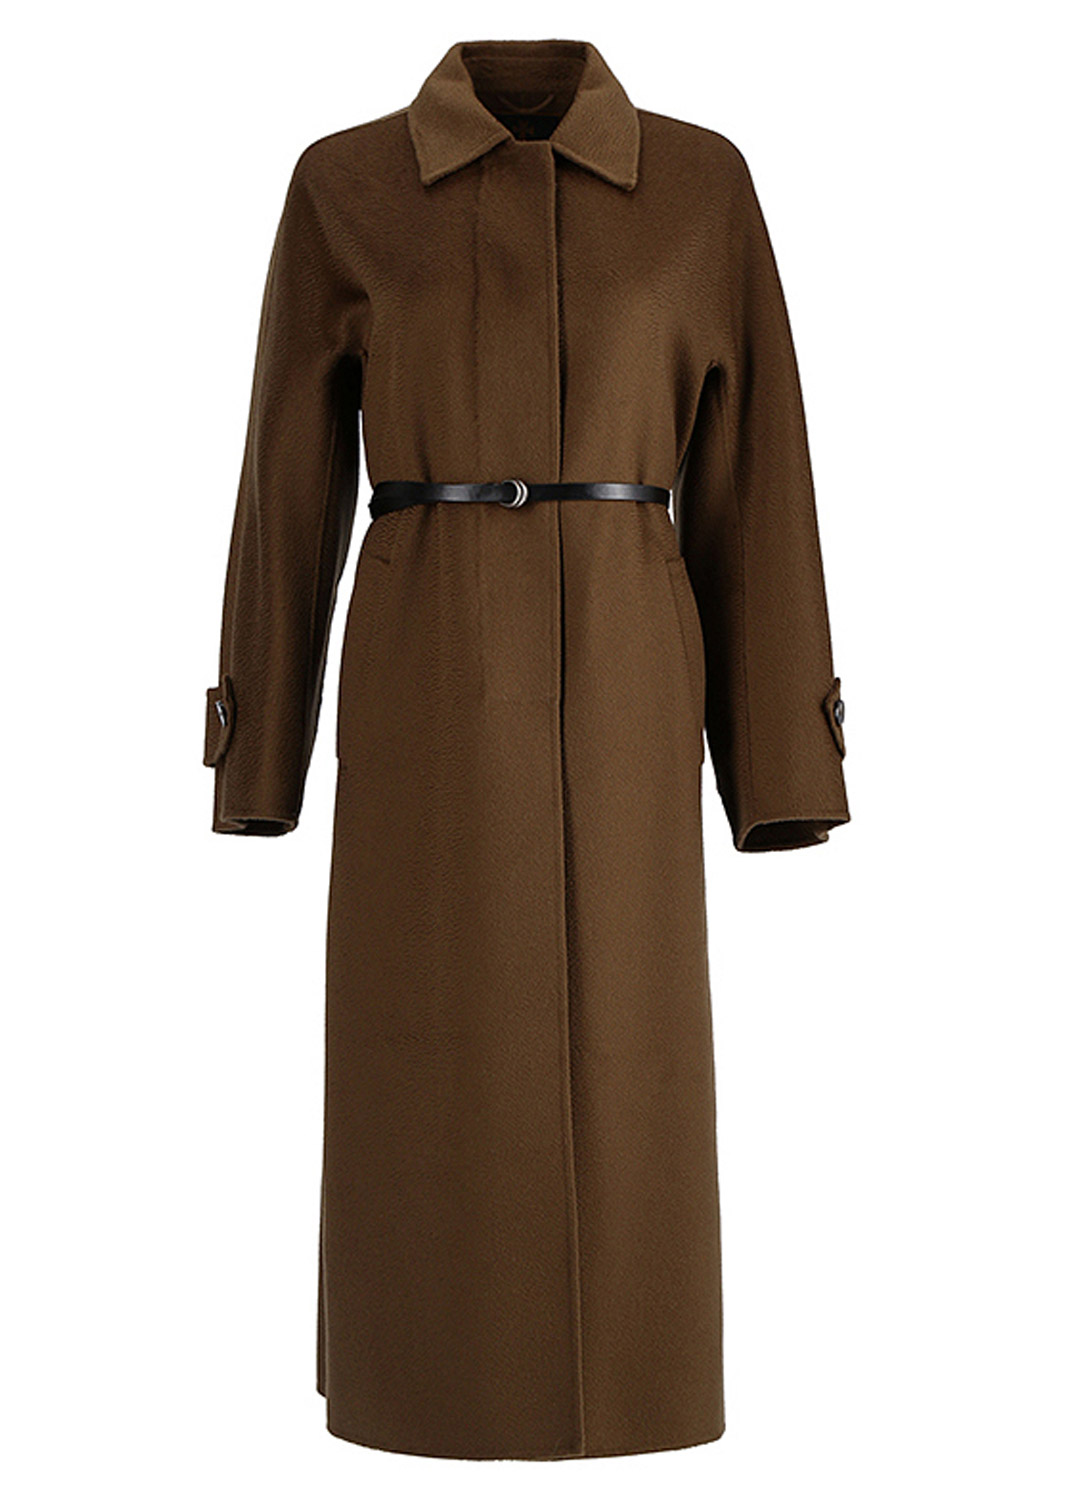 K Cashmere coat [Khaki]